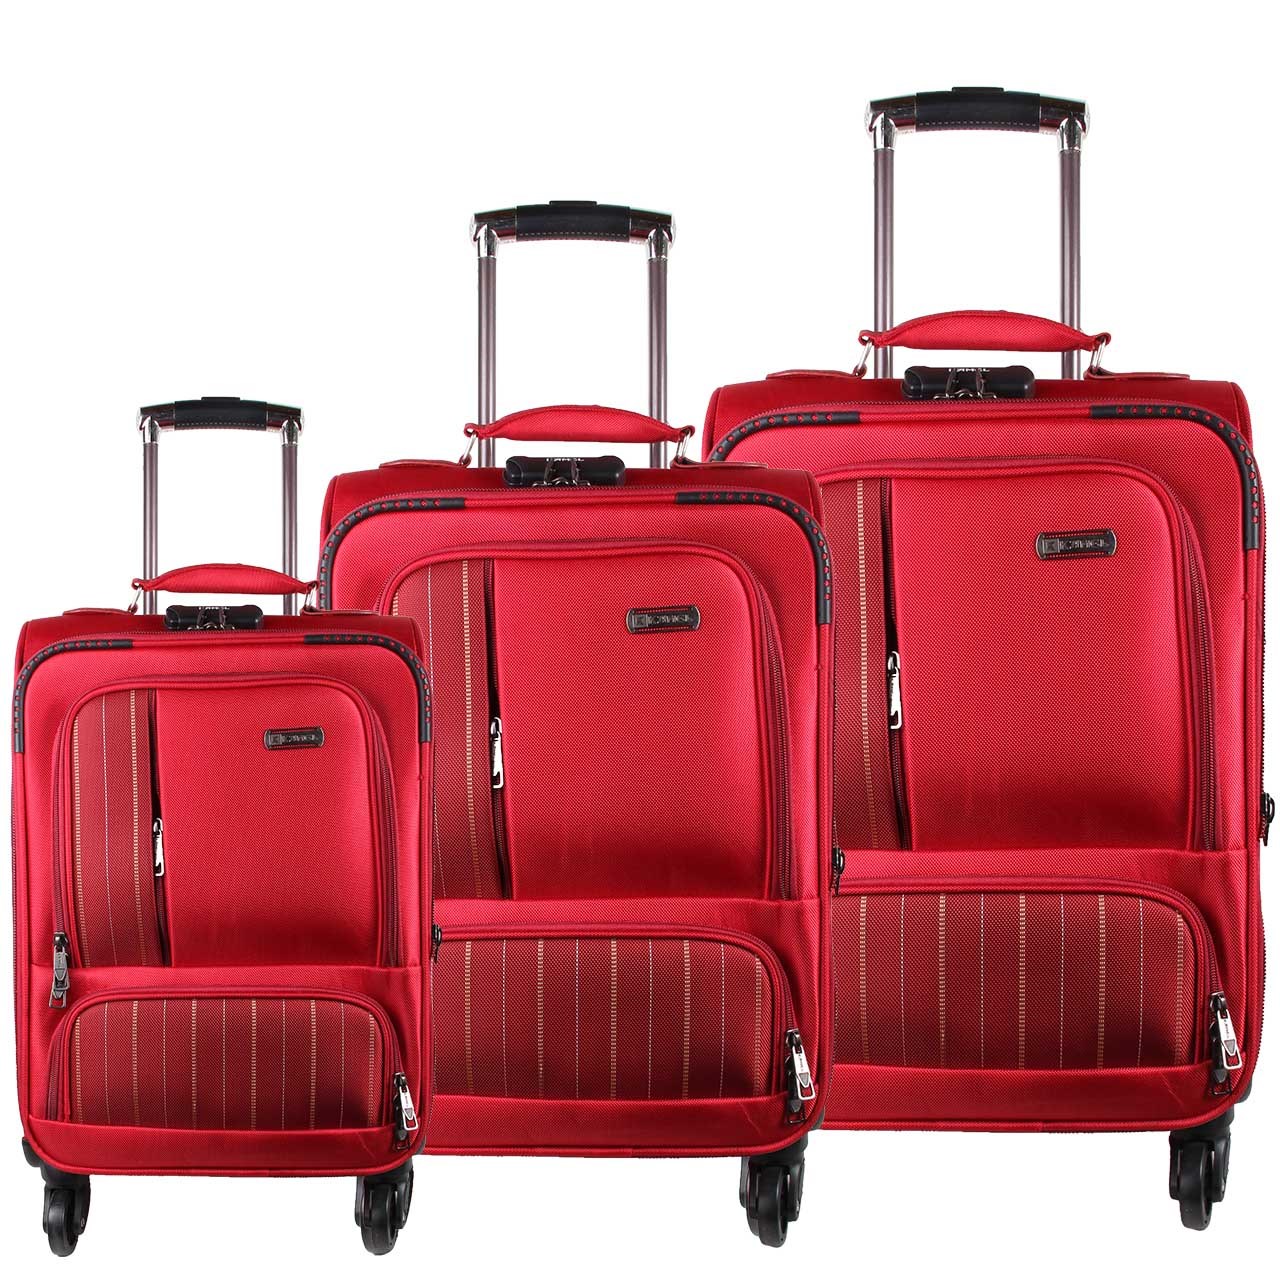 مجموعه سه عددی چمدان کمل مدل 7-517